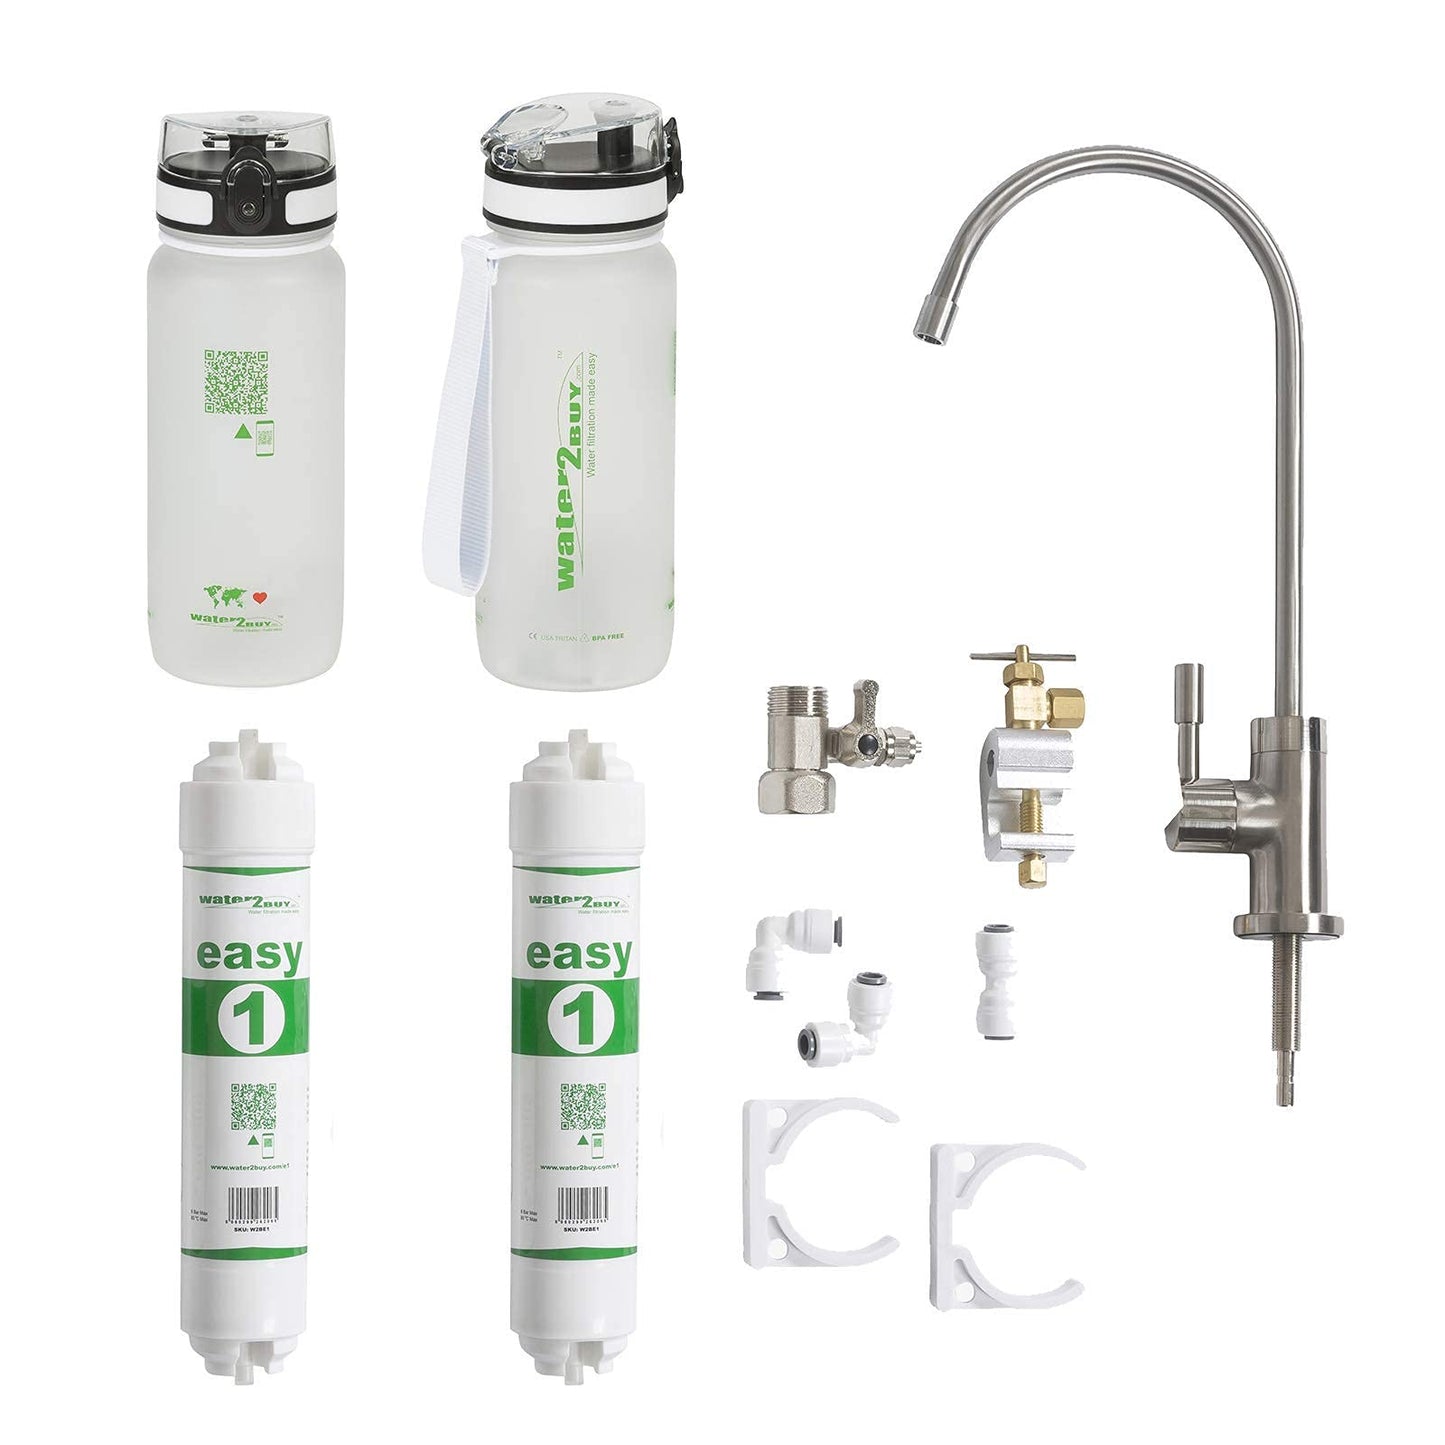 Système de filtre à eau Easy1 avec 2 bouteilles d'eau, fournit 6 000 L d'eau propre pendant 6 à 12 mois, certifié NSF/FDS/ISO 9001 et 14001, robinet de filtre à eau sous l'évier, modèle de kit de bricolage facile